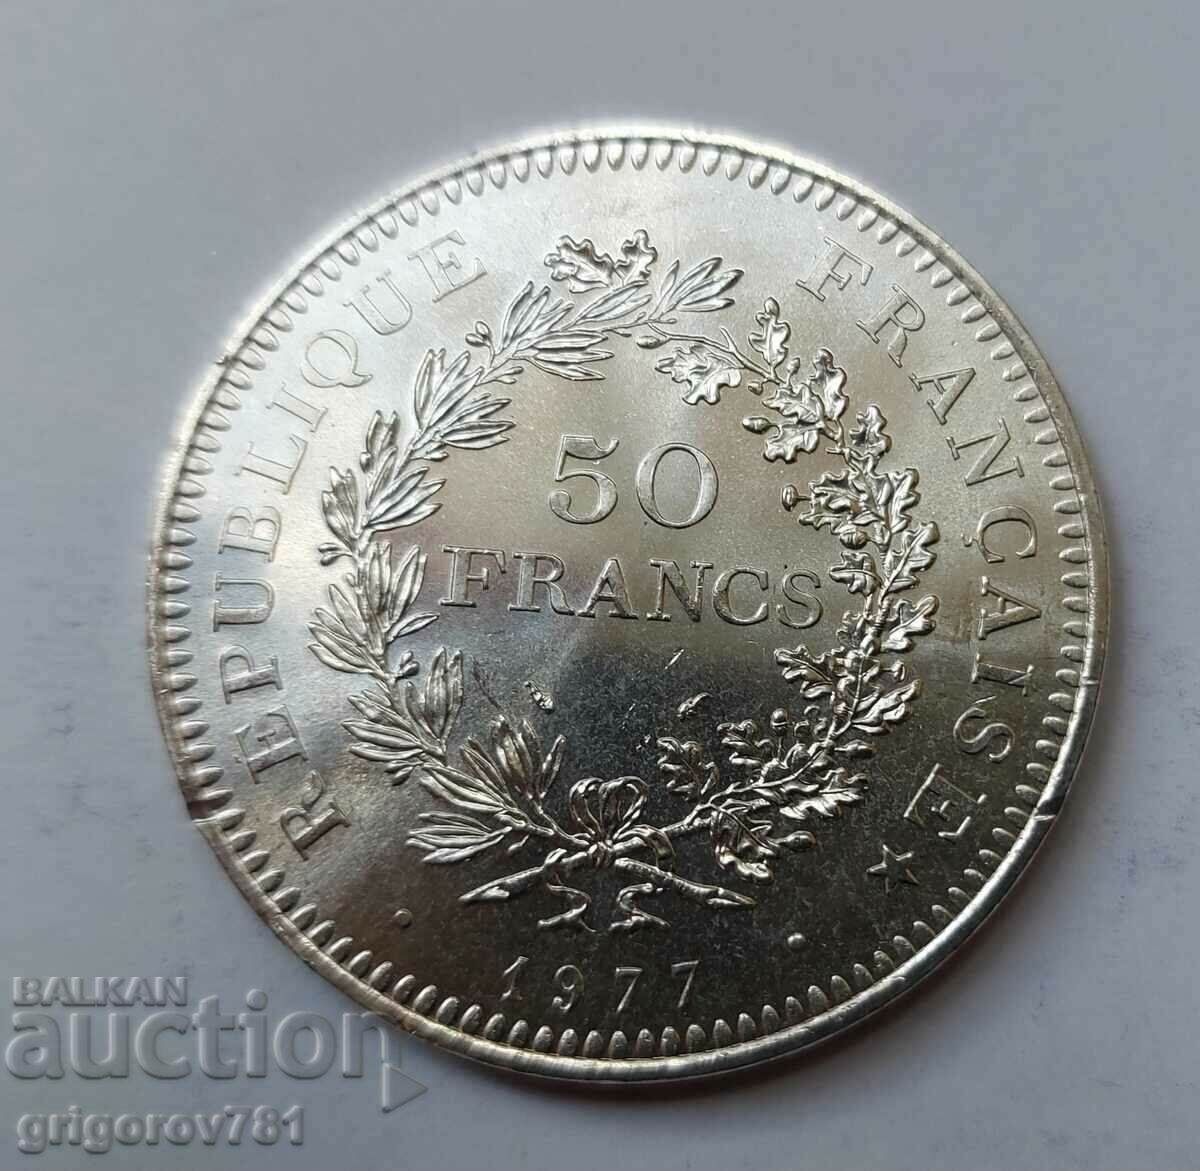 50 Φράγκα Ασήμι Γαλλία 1977 - Ασημένιο νόμισμα #48